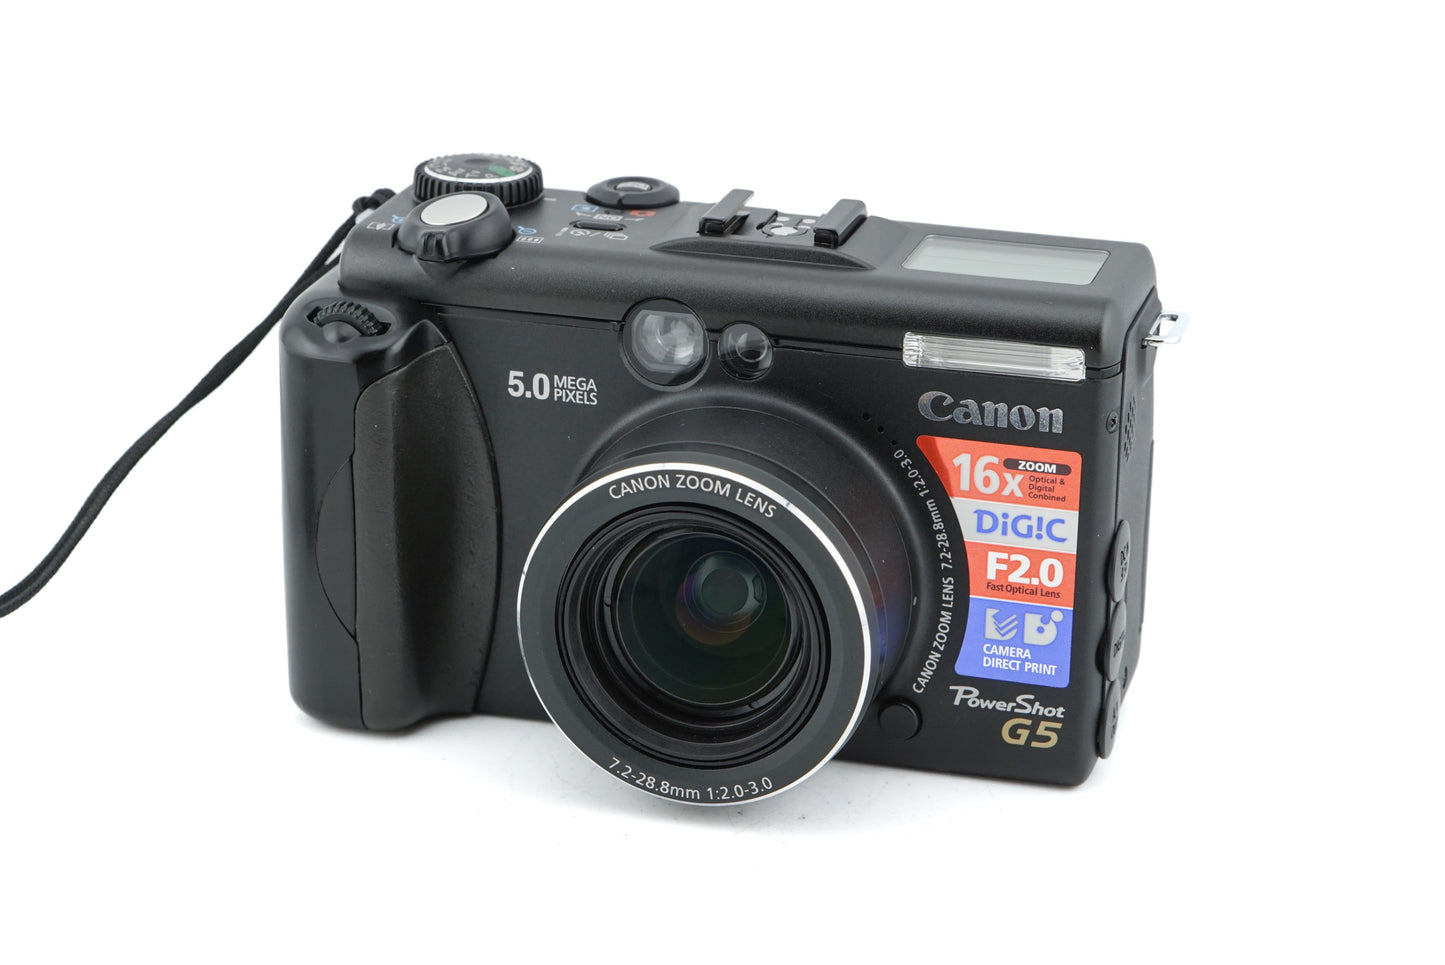 Canon Powershot G5 - Camera